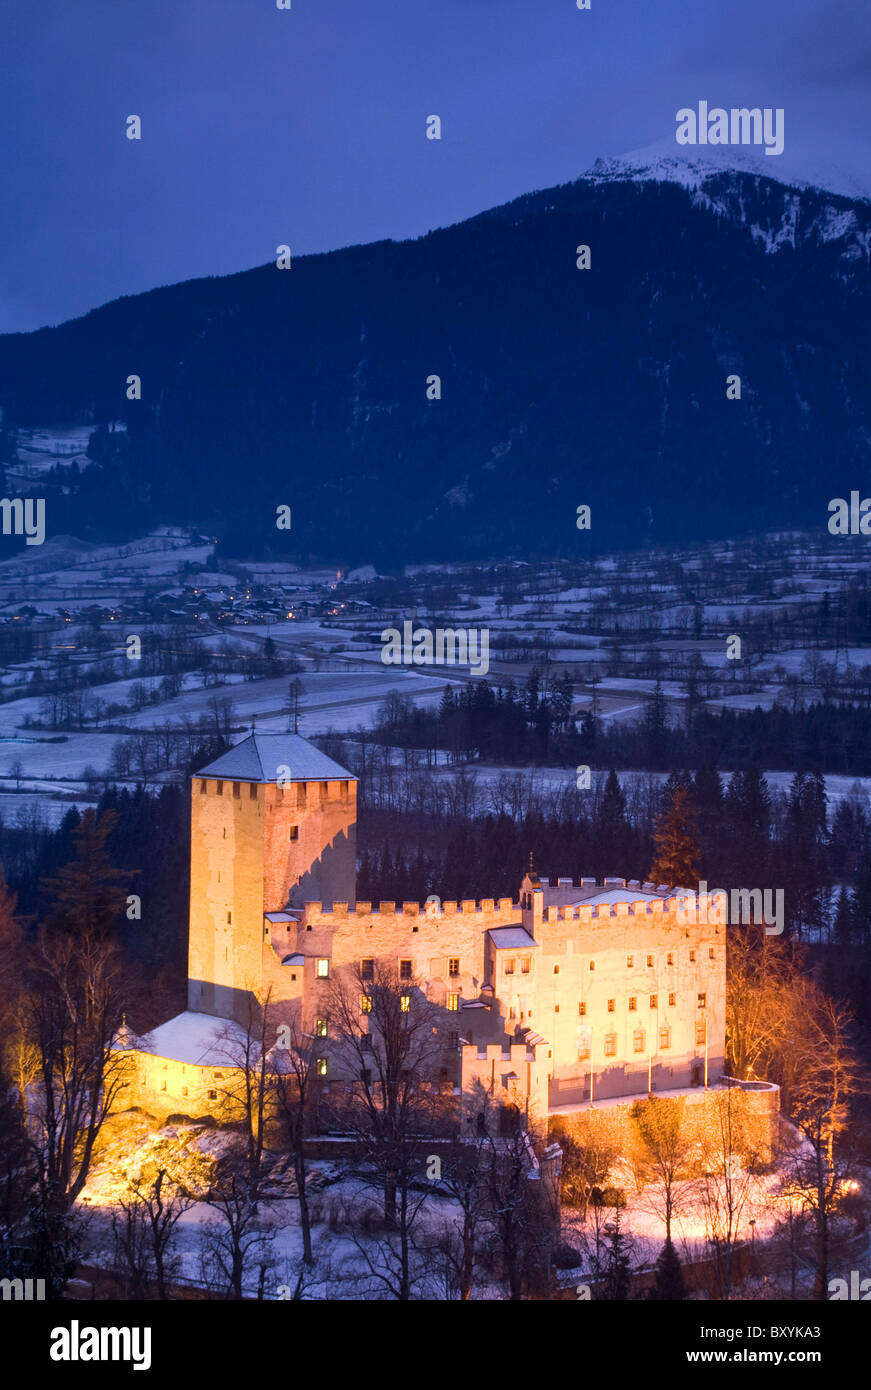 Bruck castello di notte con le Alpi austriache in background Foto Stock